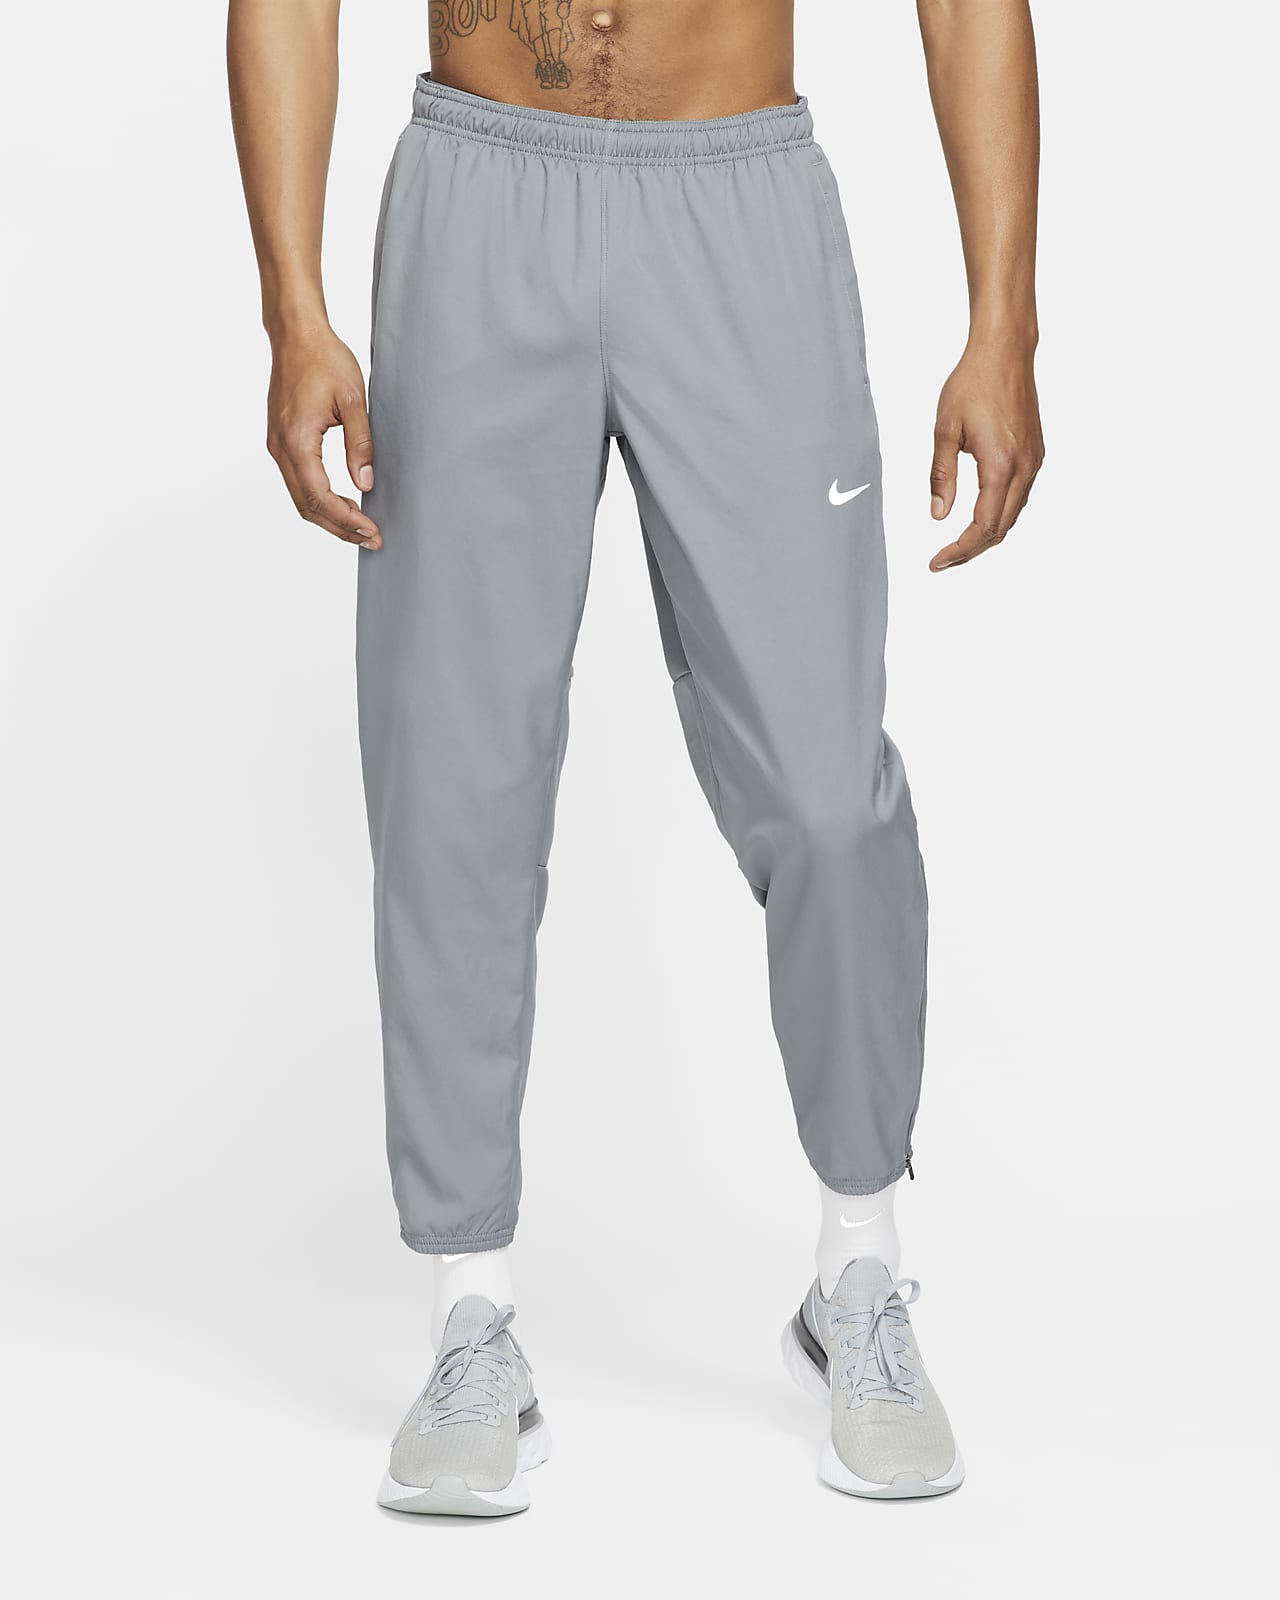 Ανδρικό υφαντό παντελόνι για τρέξιμο Nike Dri-FIT Challenger